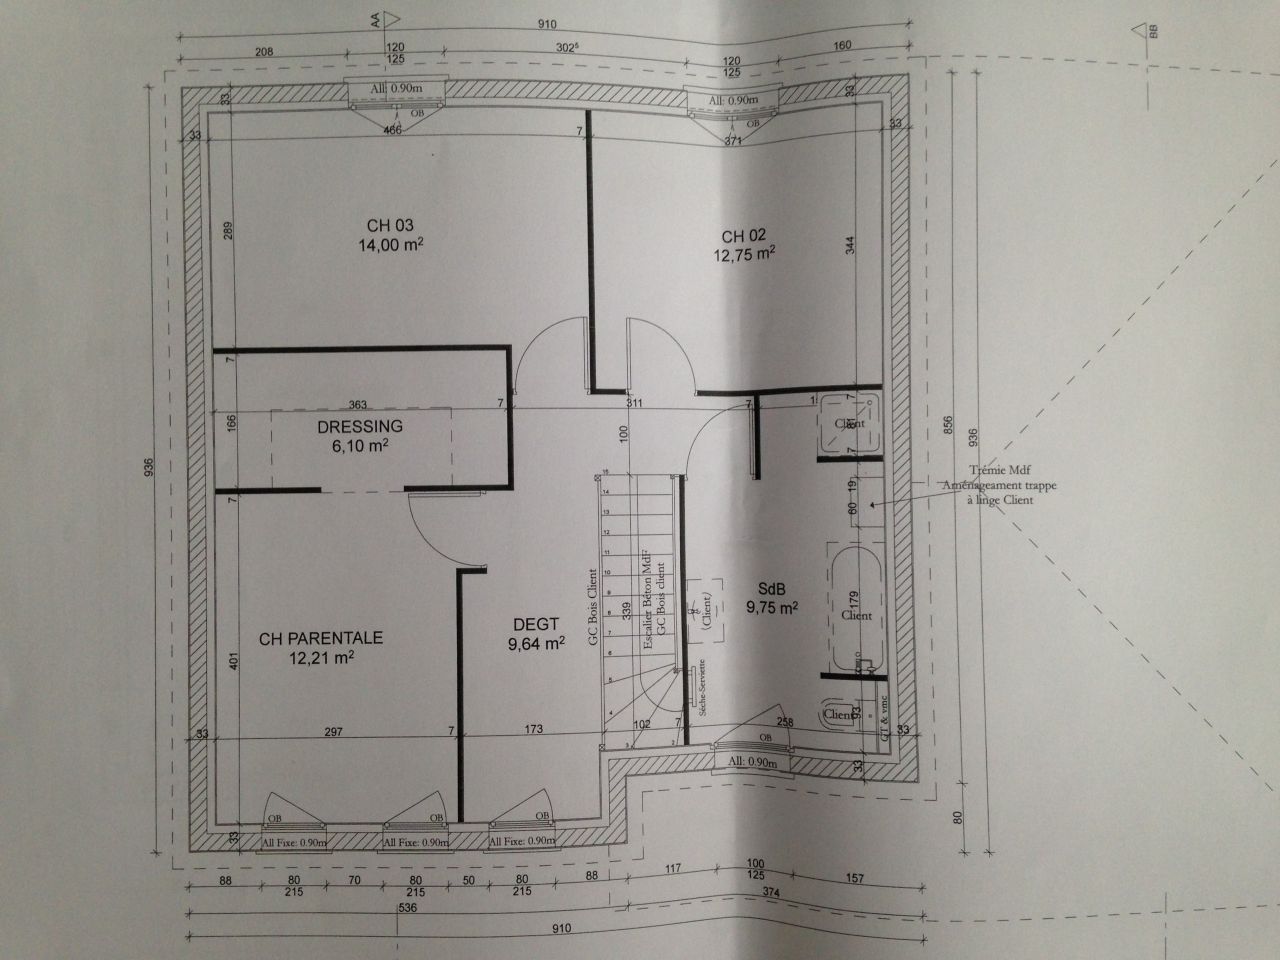 Plan de l'tage : 3 chambres, 1 SDB, et la fameuse trappe  linge